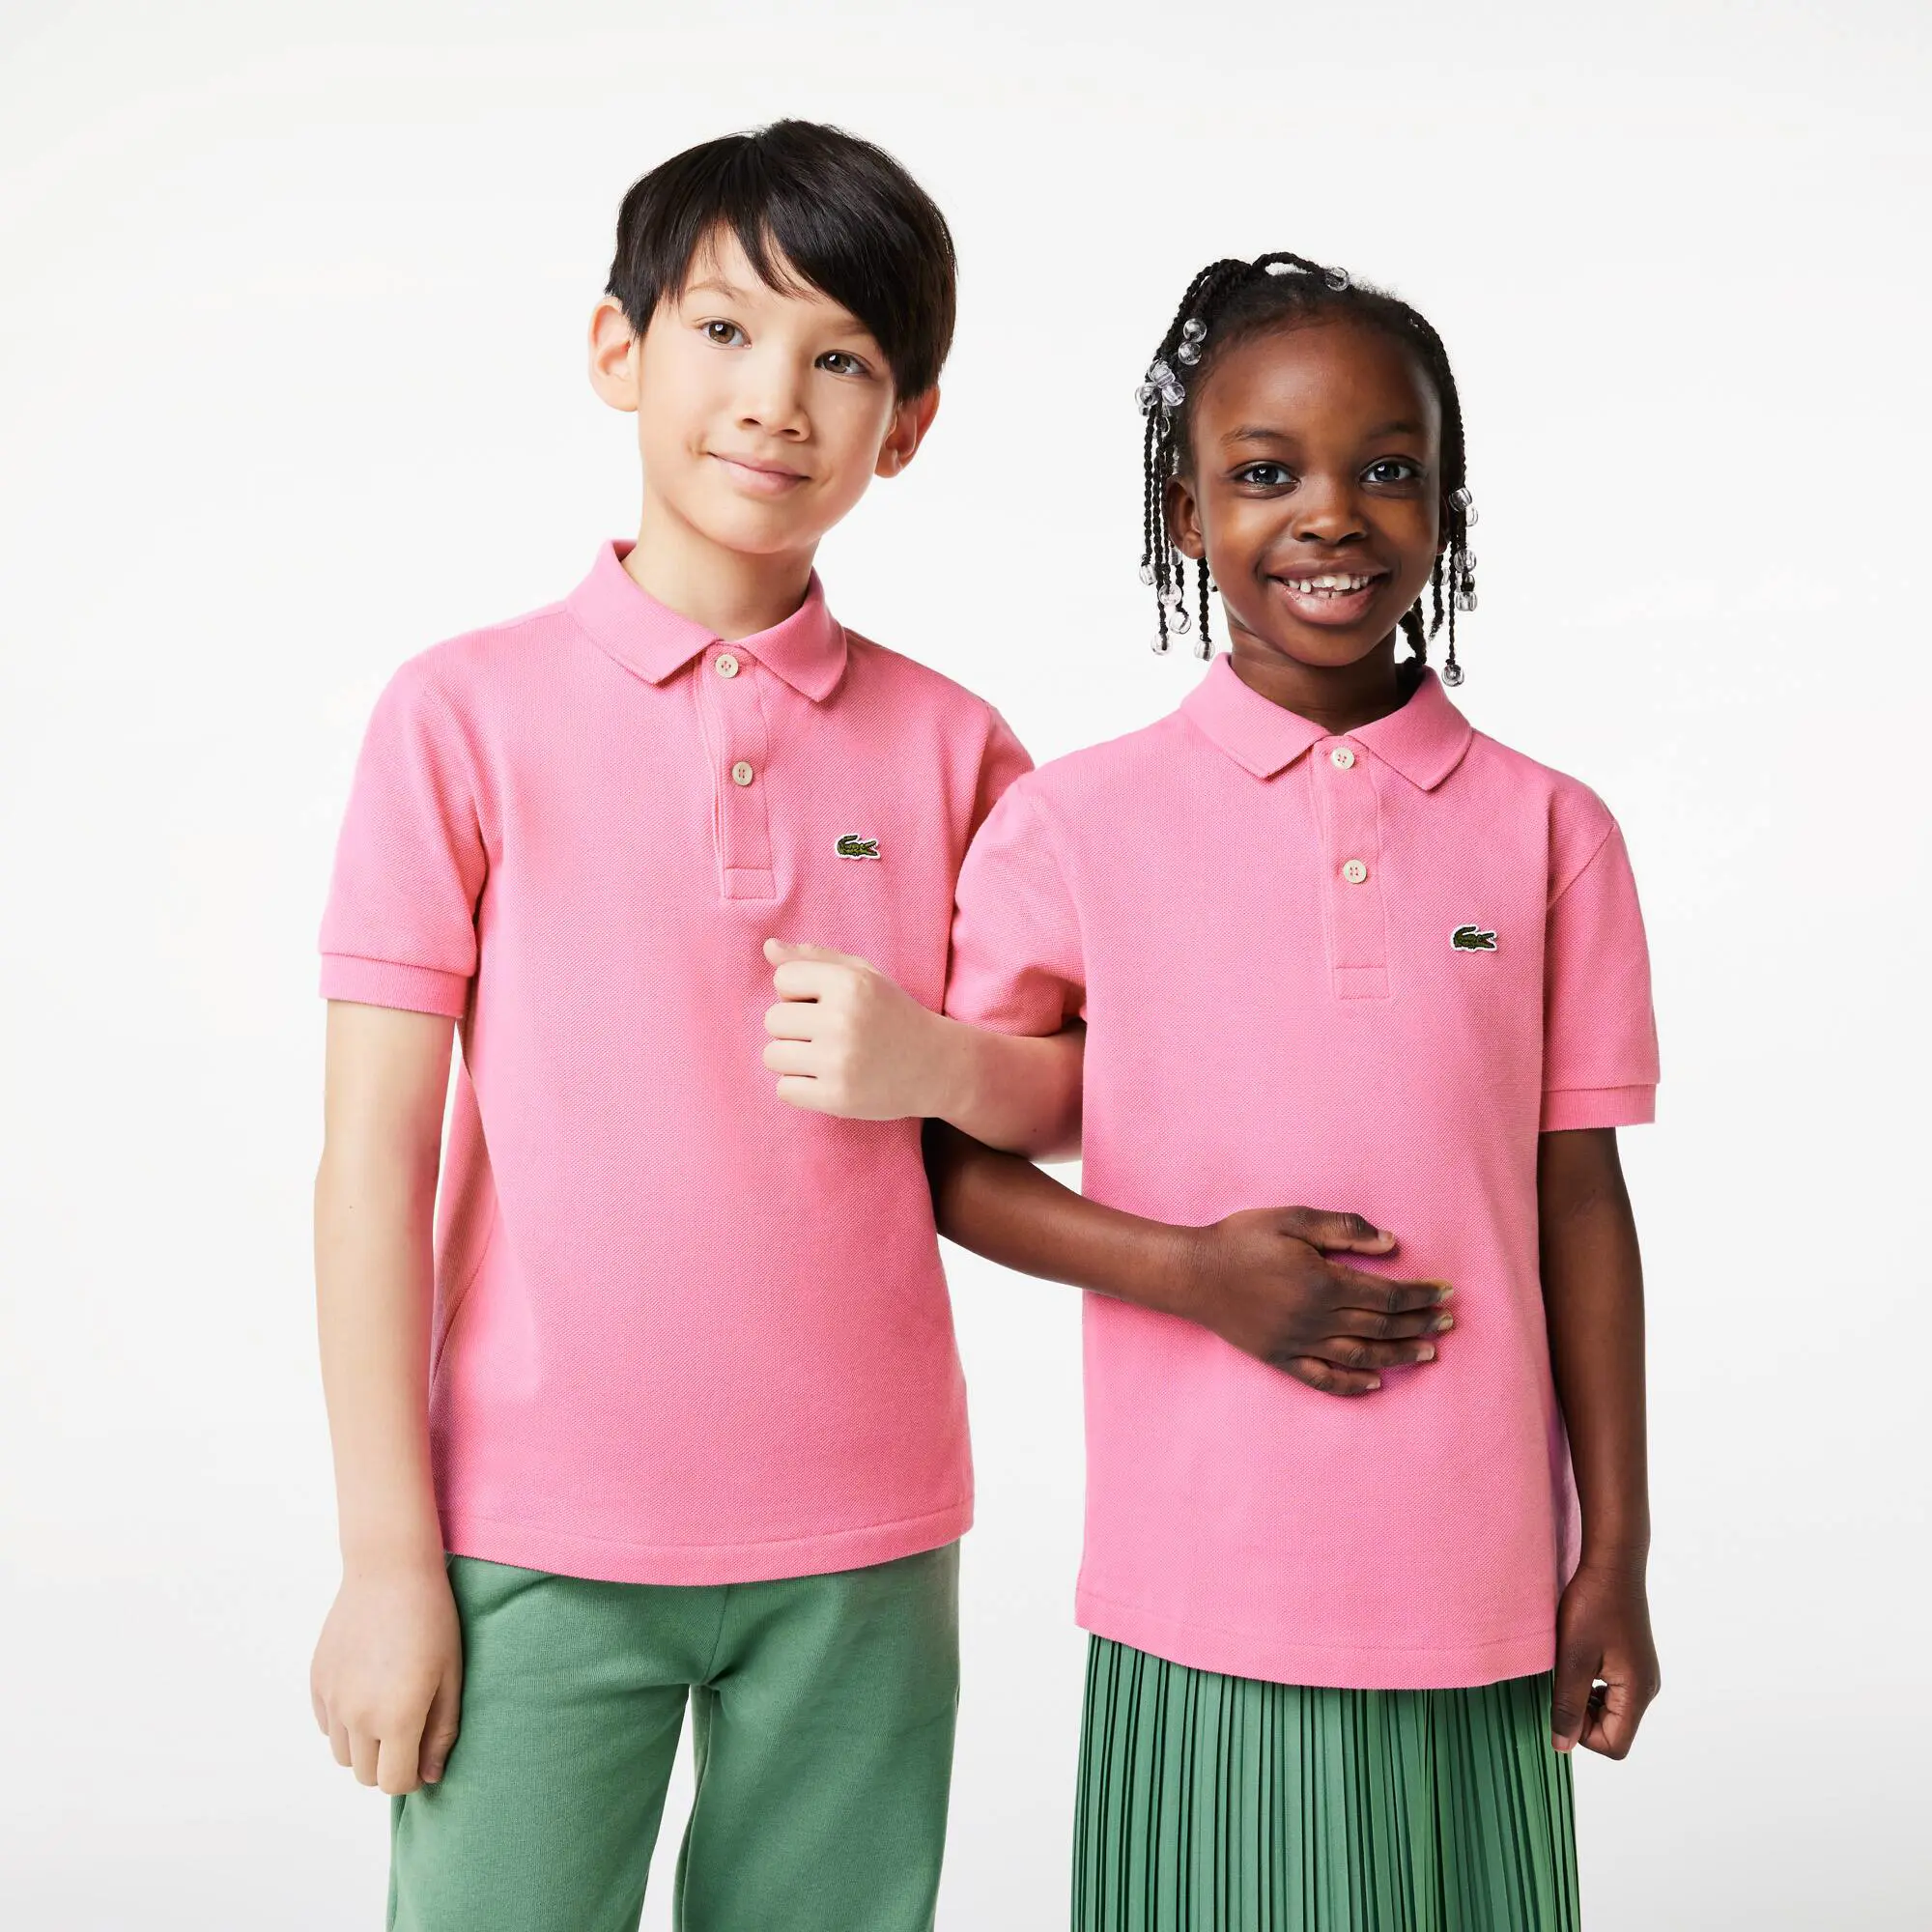 Lacoste Kids' Lacoste Regular Fit Petit Piqué Polo Shirt. 1